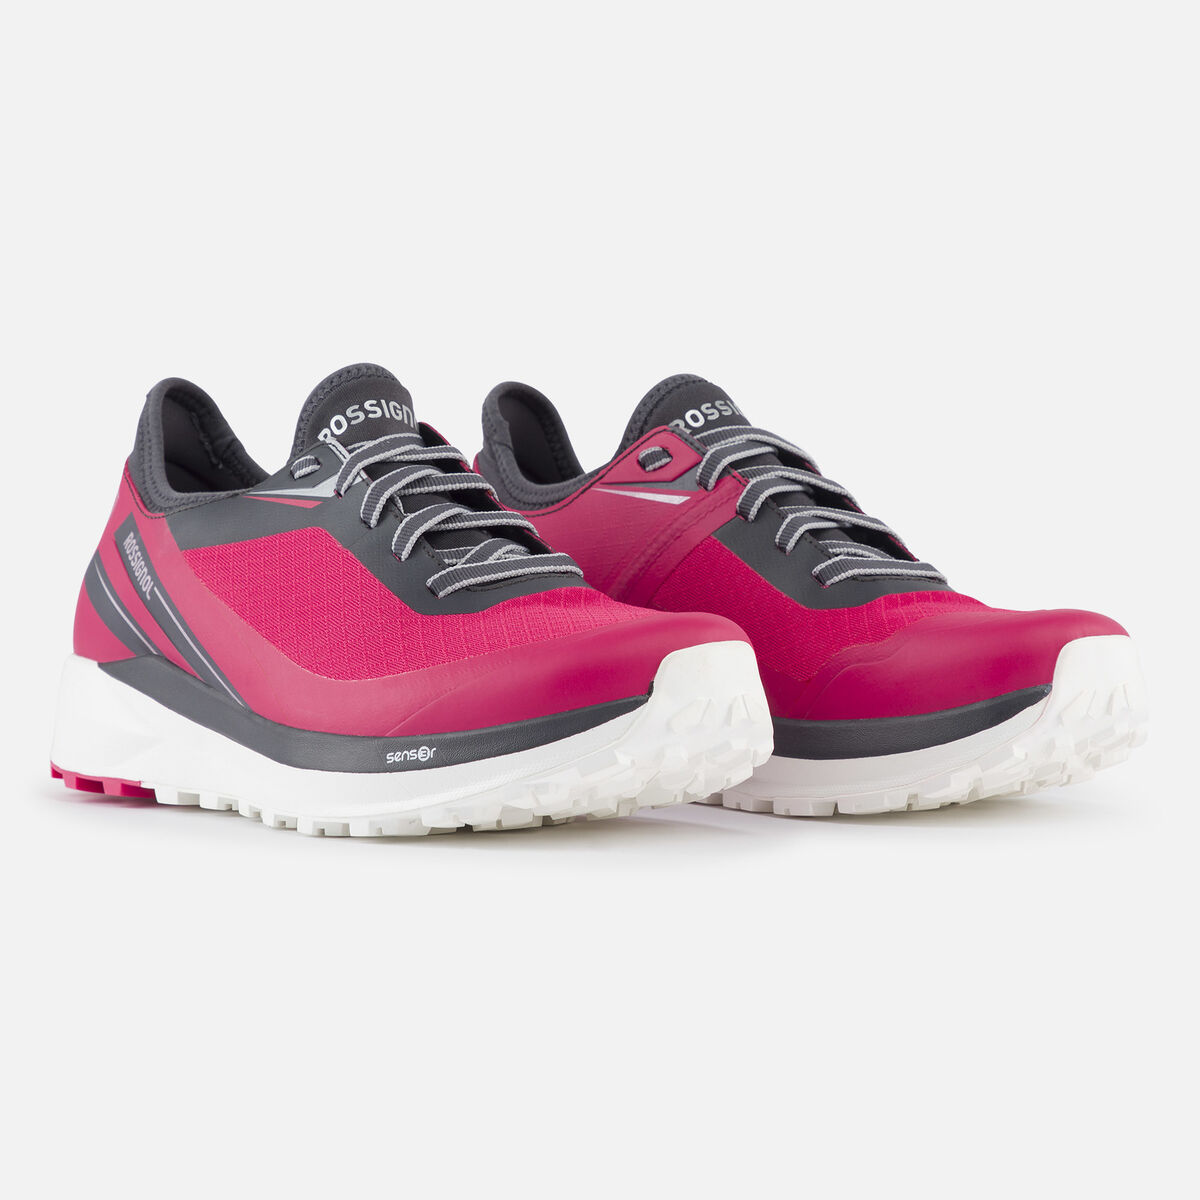 Rossignol Wasserdichte Active Outdoor-Schuhe für Damen Rosa pinkpurple